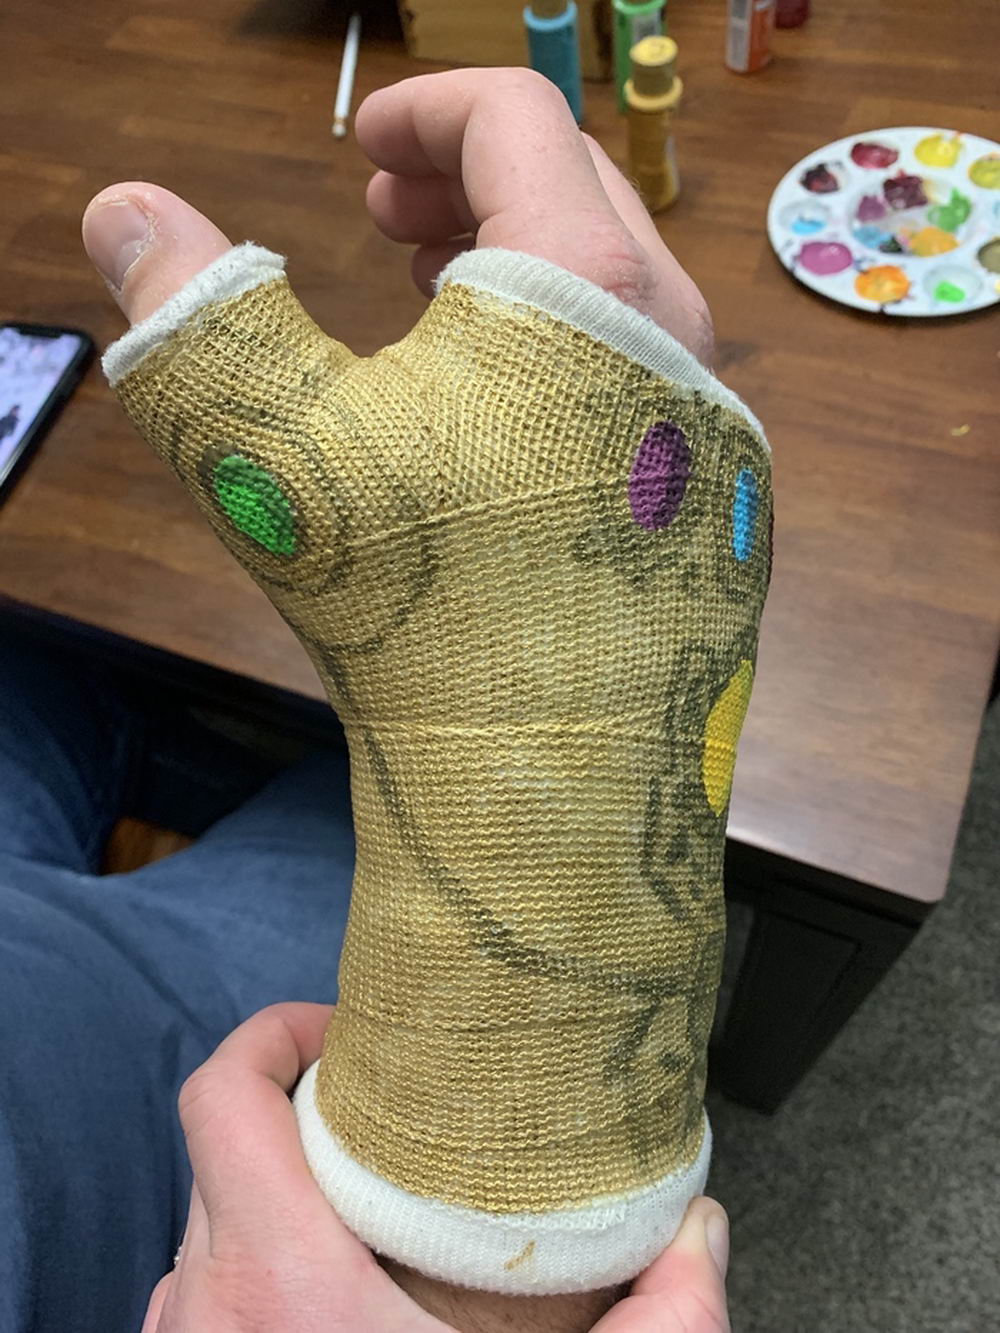 thanos wrist cast